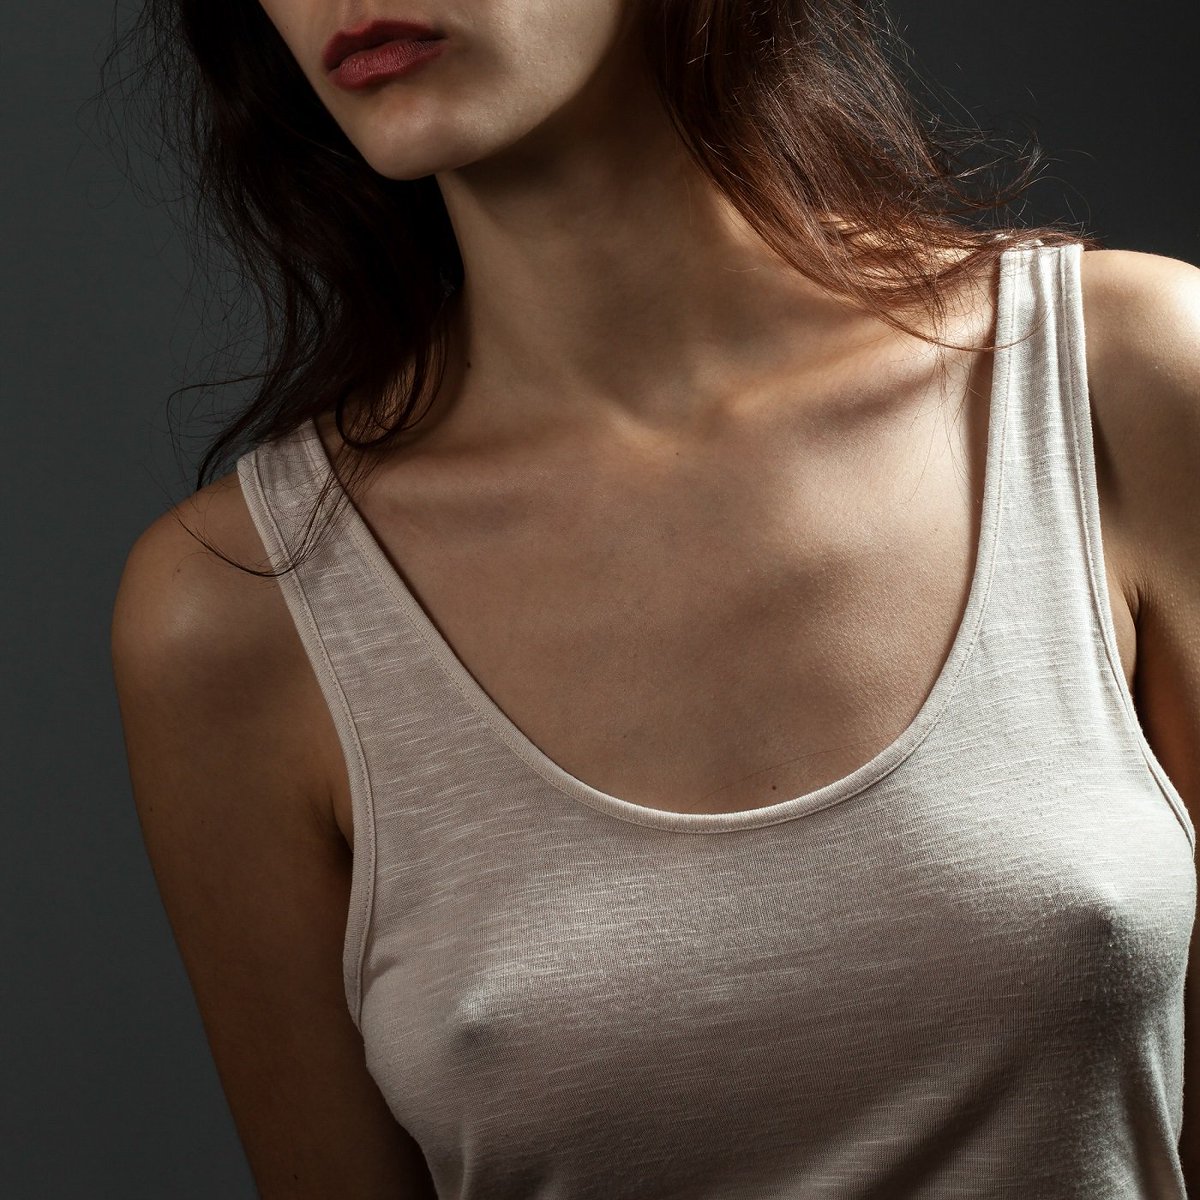 фотографии женщин без груди фото 40